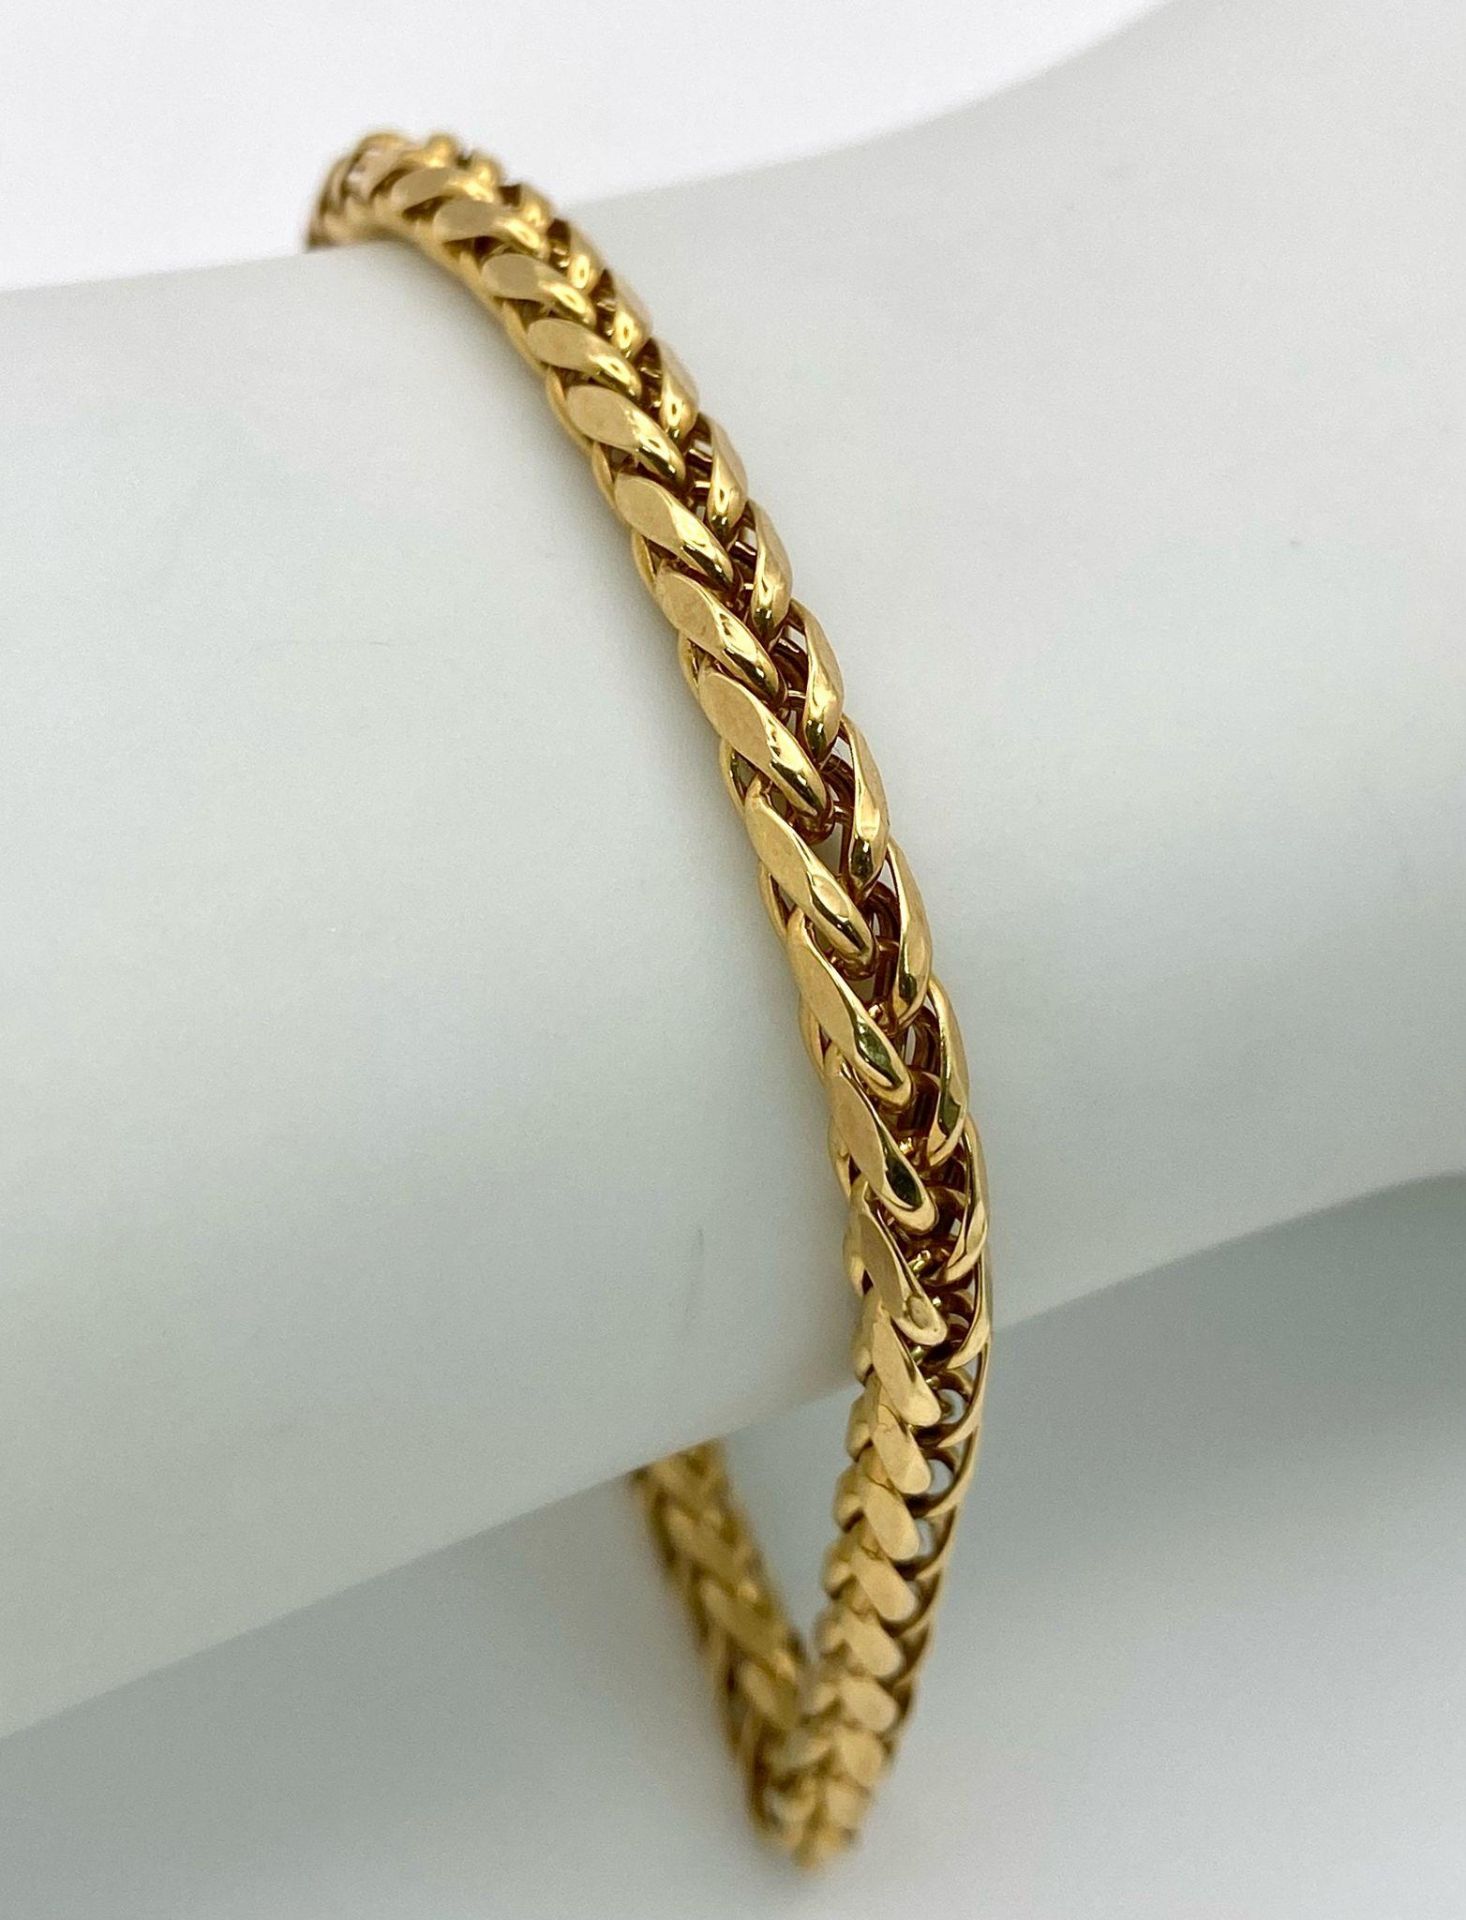 A 9K Yellow Gold Intricate Link Bracelet. 18cm. 5g weight. - Bild 3 aus 6